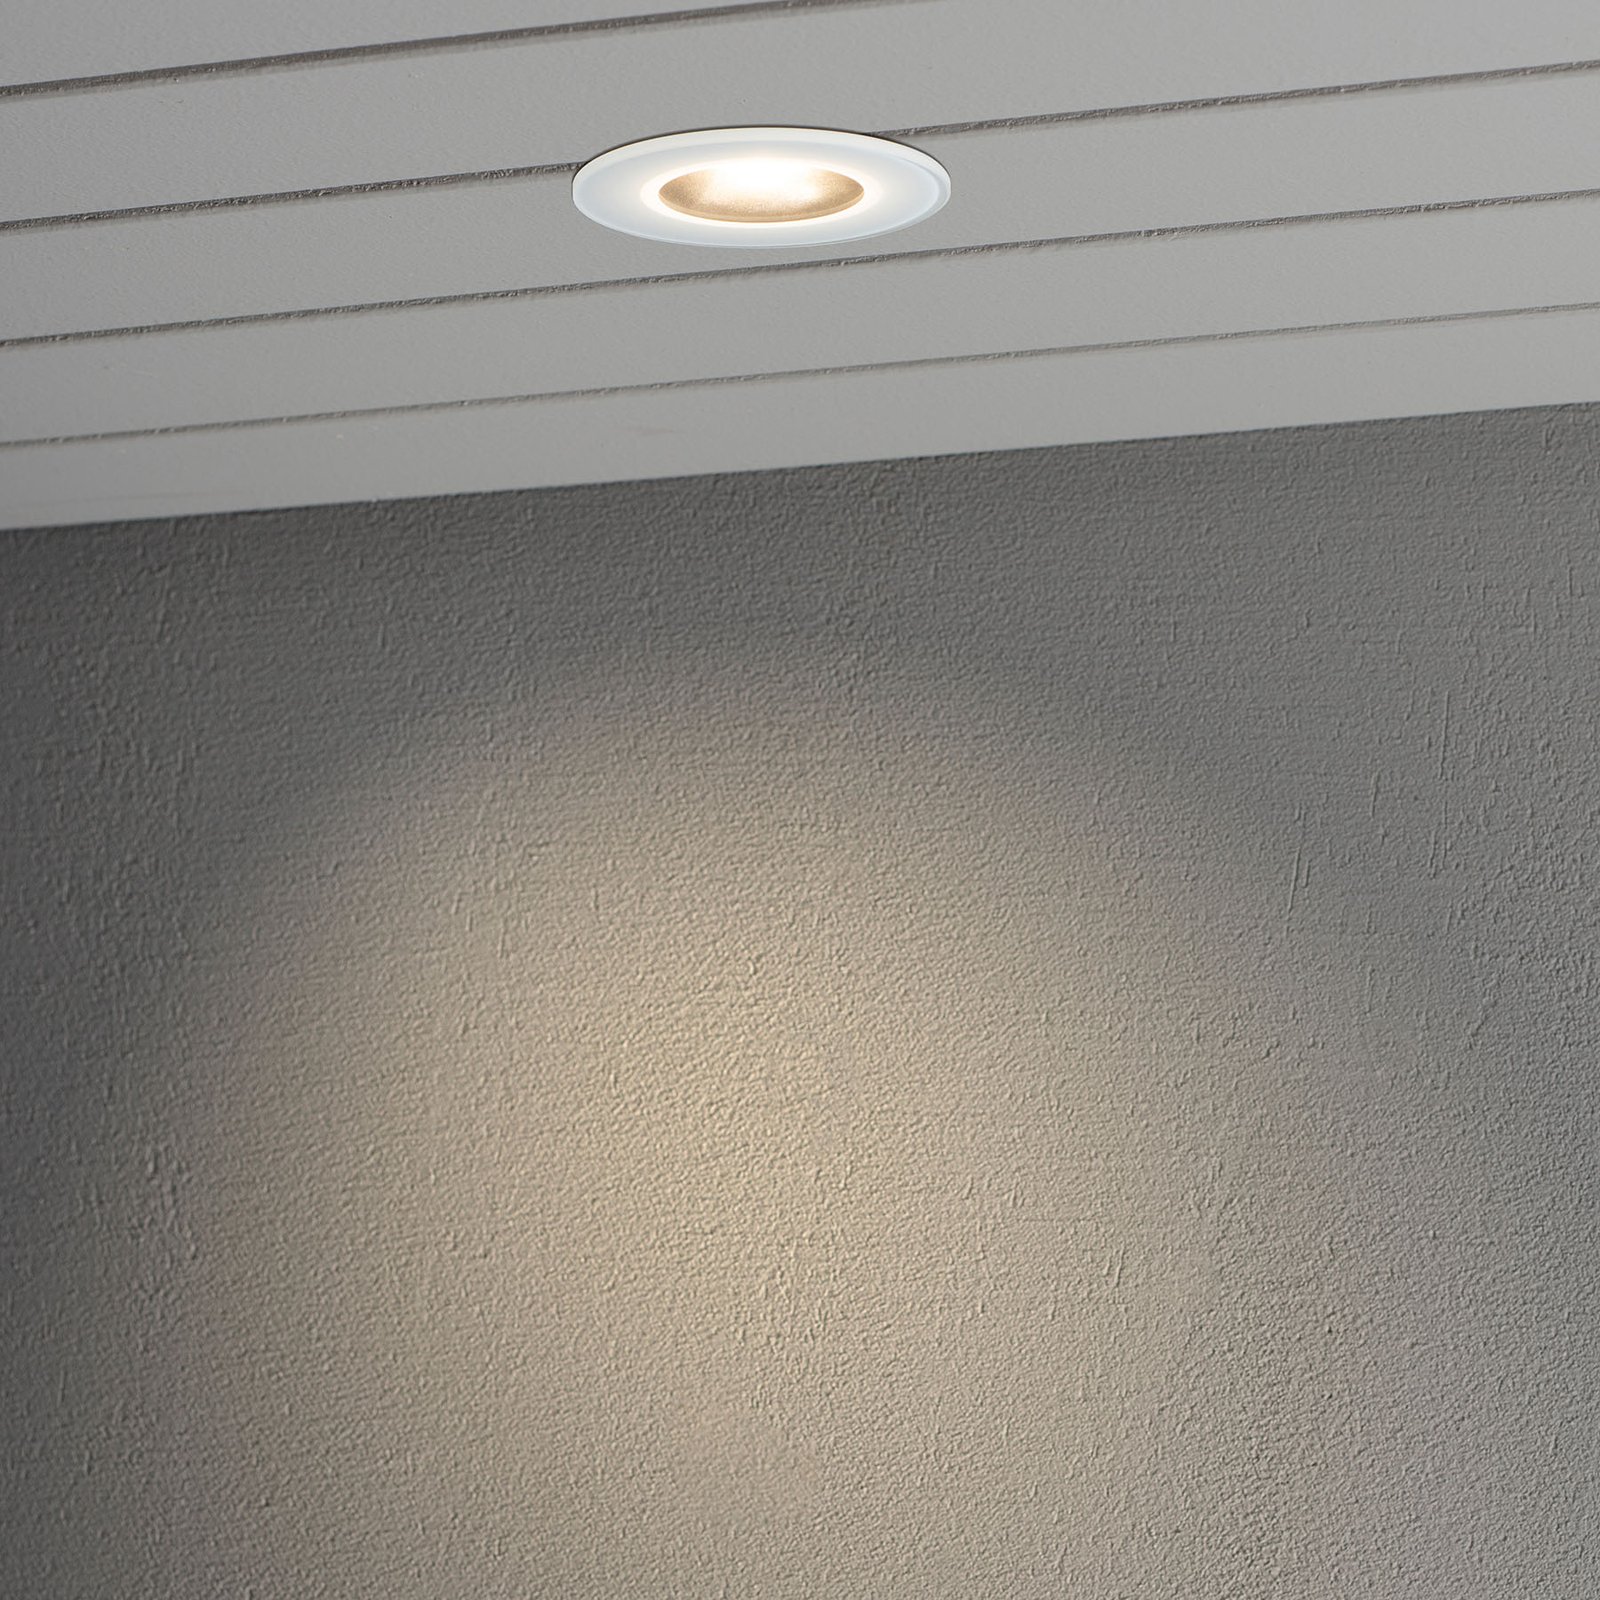 Spot encastré sol LED 7875 plafond ext., blanc